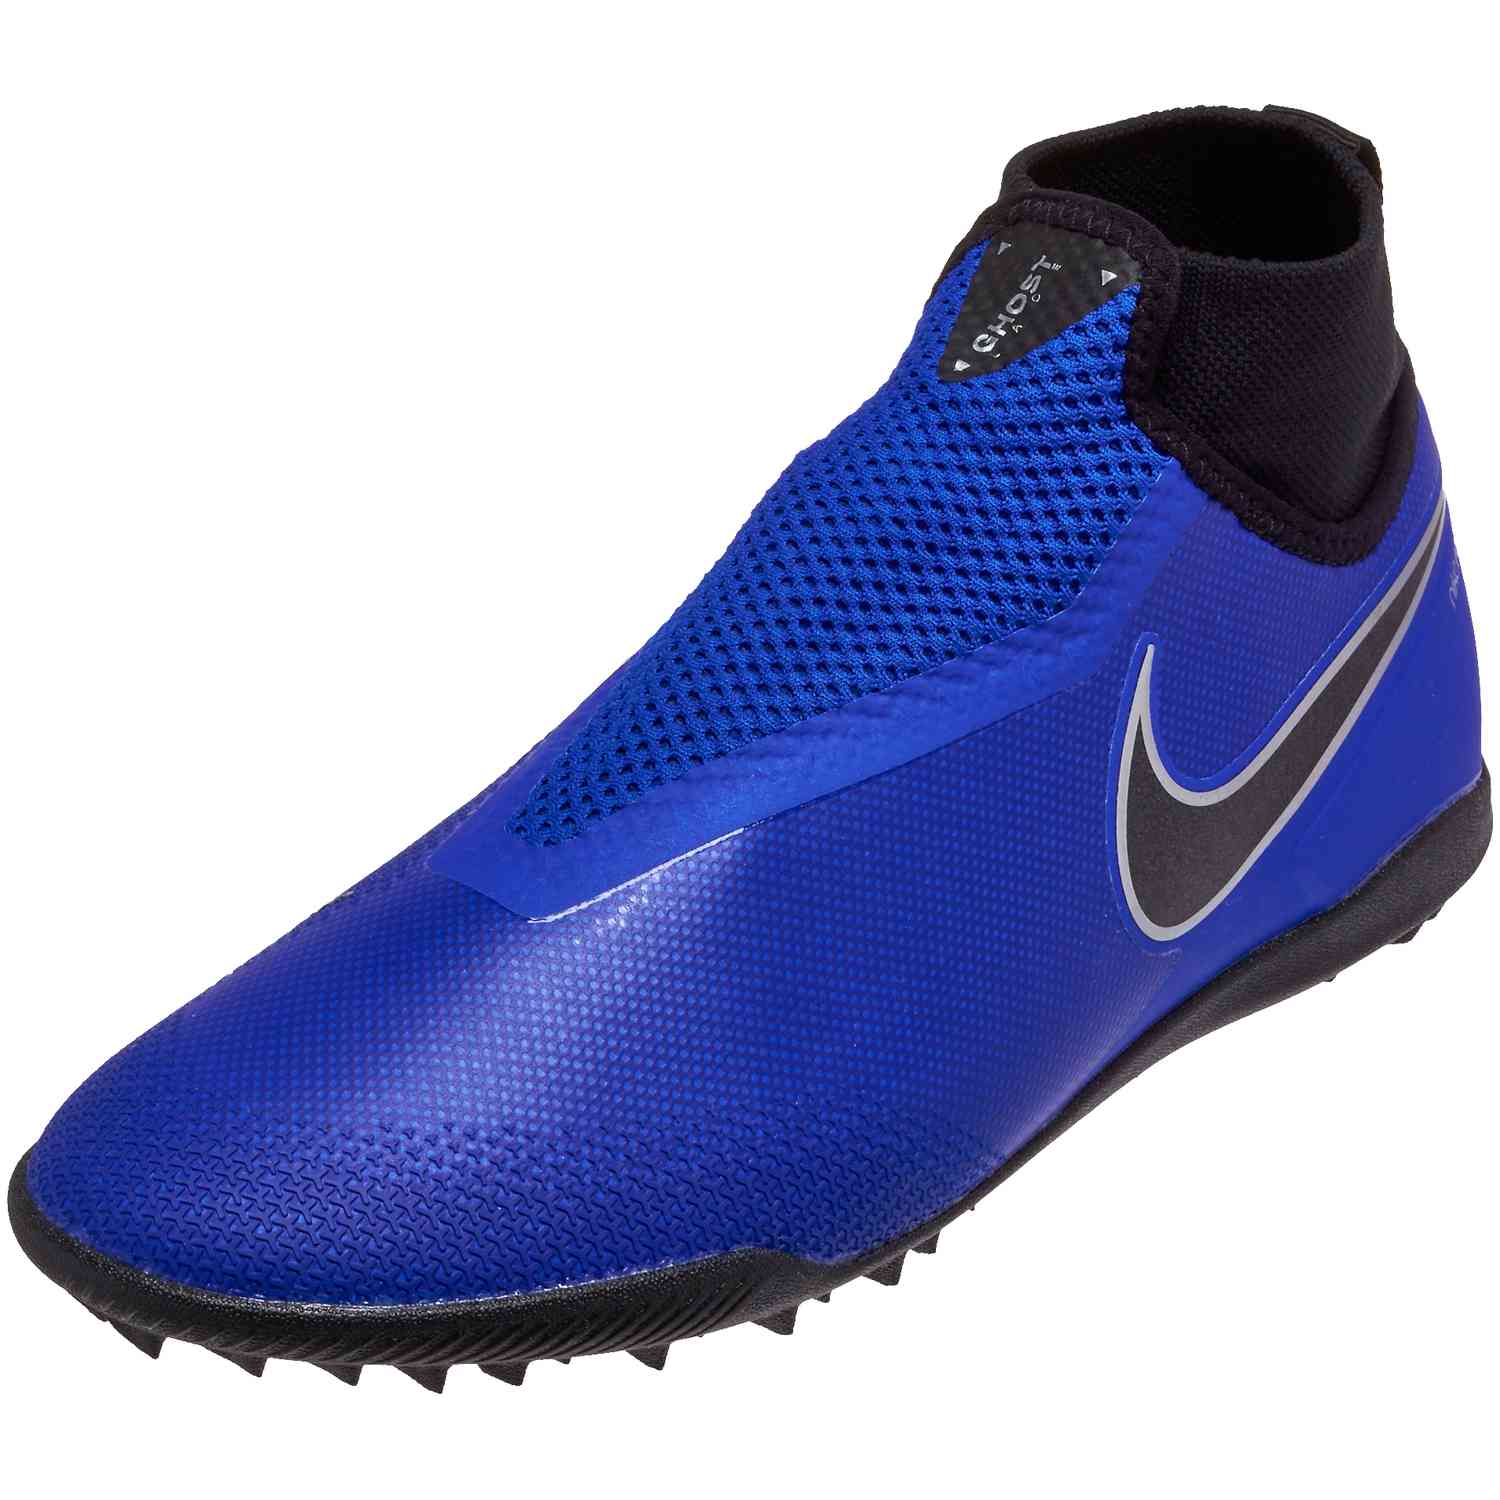 propietario Específico Prefacio Nike Phantom Vision Pro TF - Racer Blue/Black/Metallic Silver/Volt -  SoccerPro